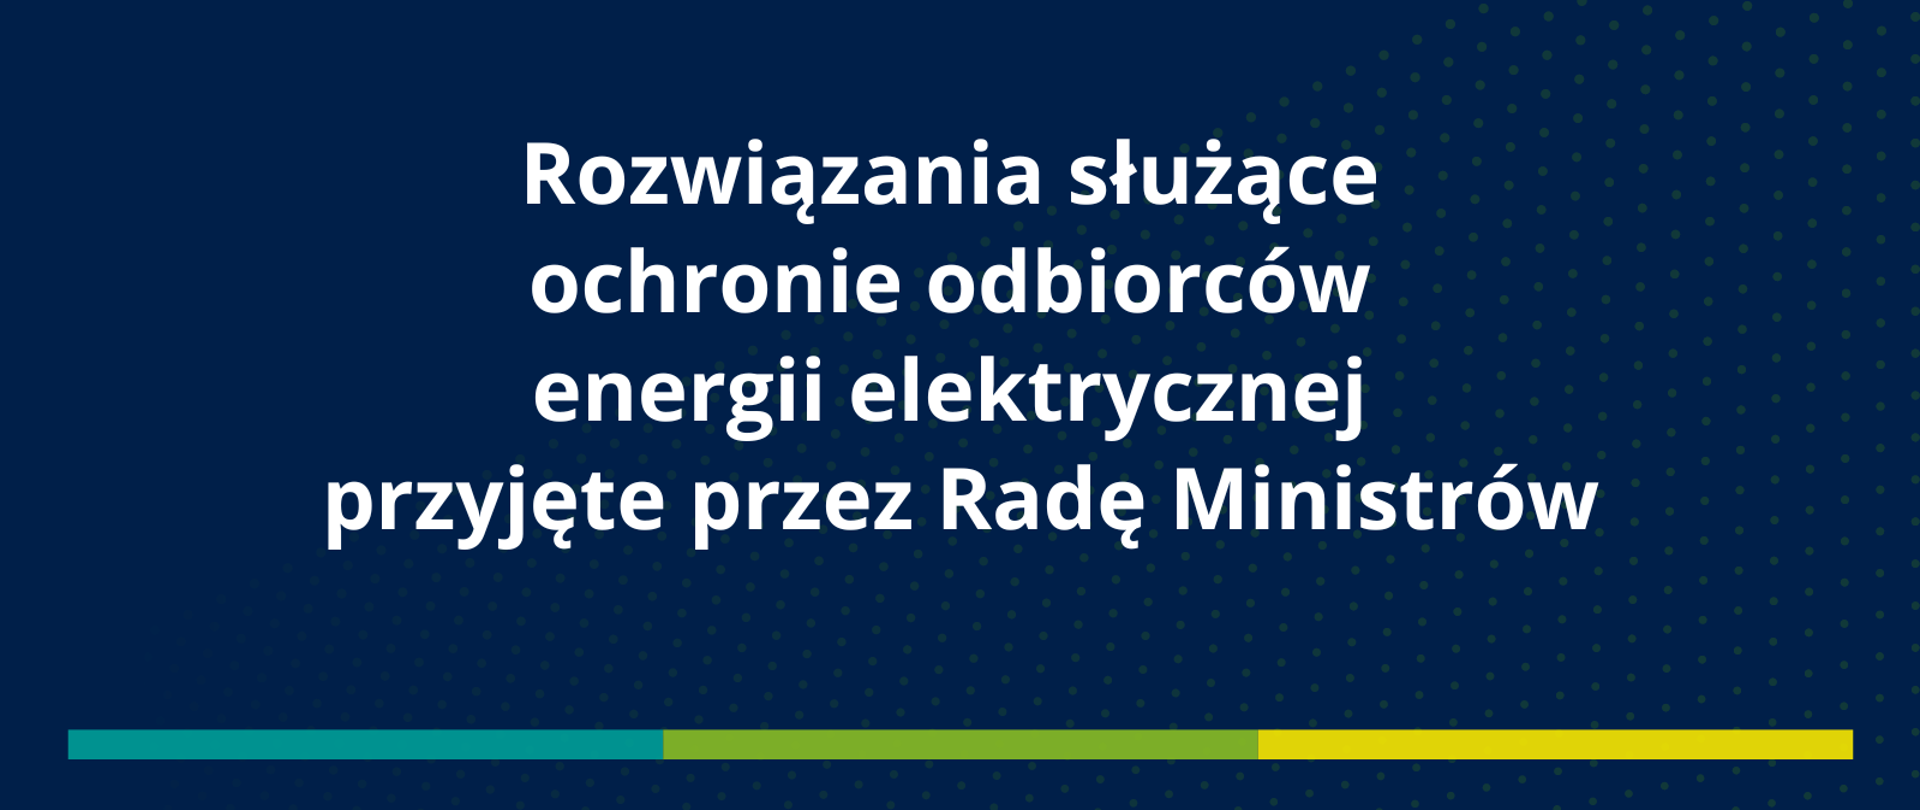 
Rozwiązania służące ochronie odbiorców energii elektrycznej przyjęte przez Radę Ministrów